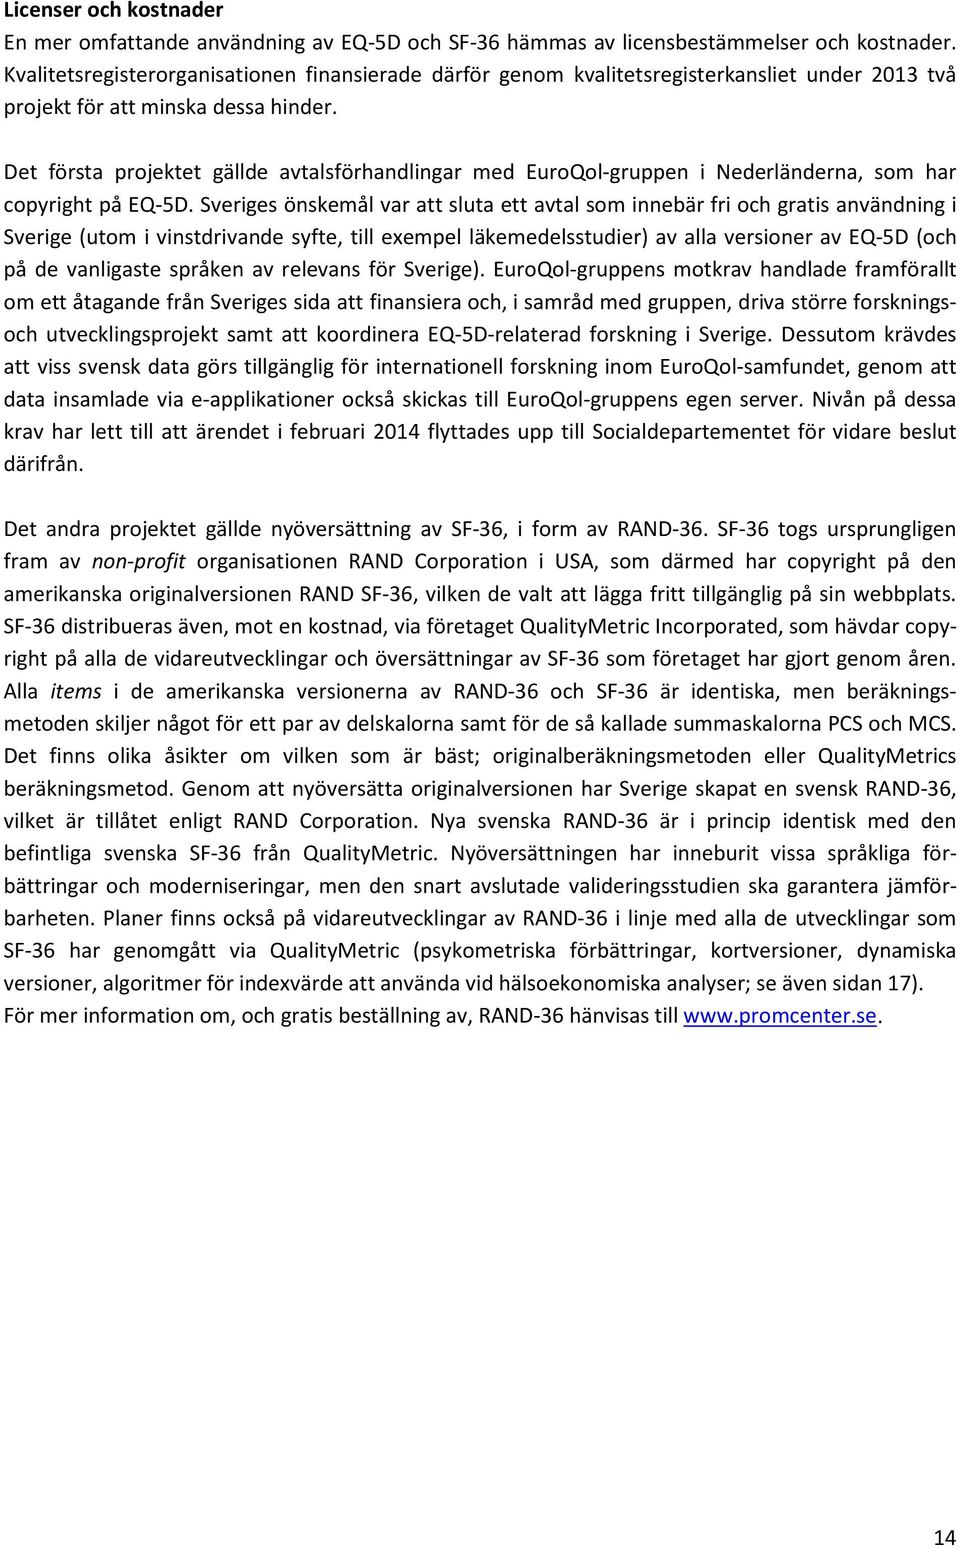 Det första projektet gällde avtalsförhandlingar med EuroQol-gruppen i Nederländerna, som har copyright på EQ-5D.